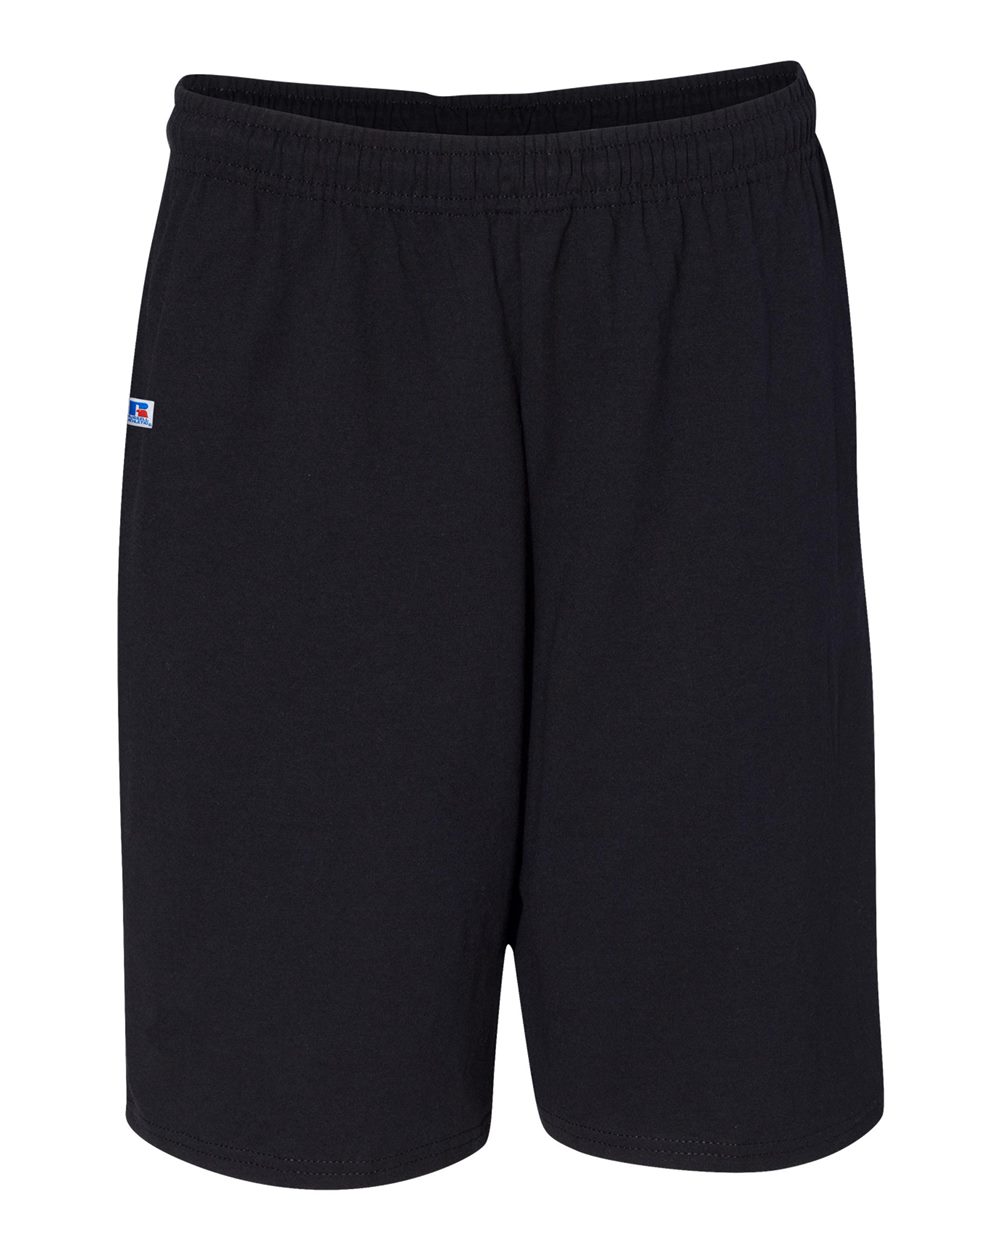 Russell Athletic shorts deportivos para hombre (sin bolsillos)